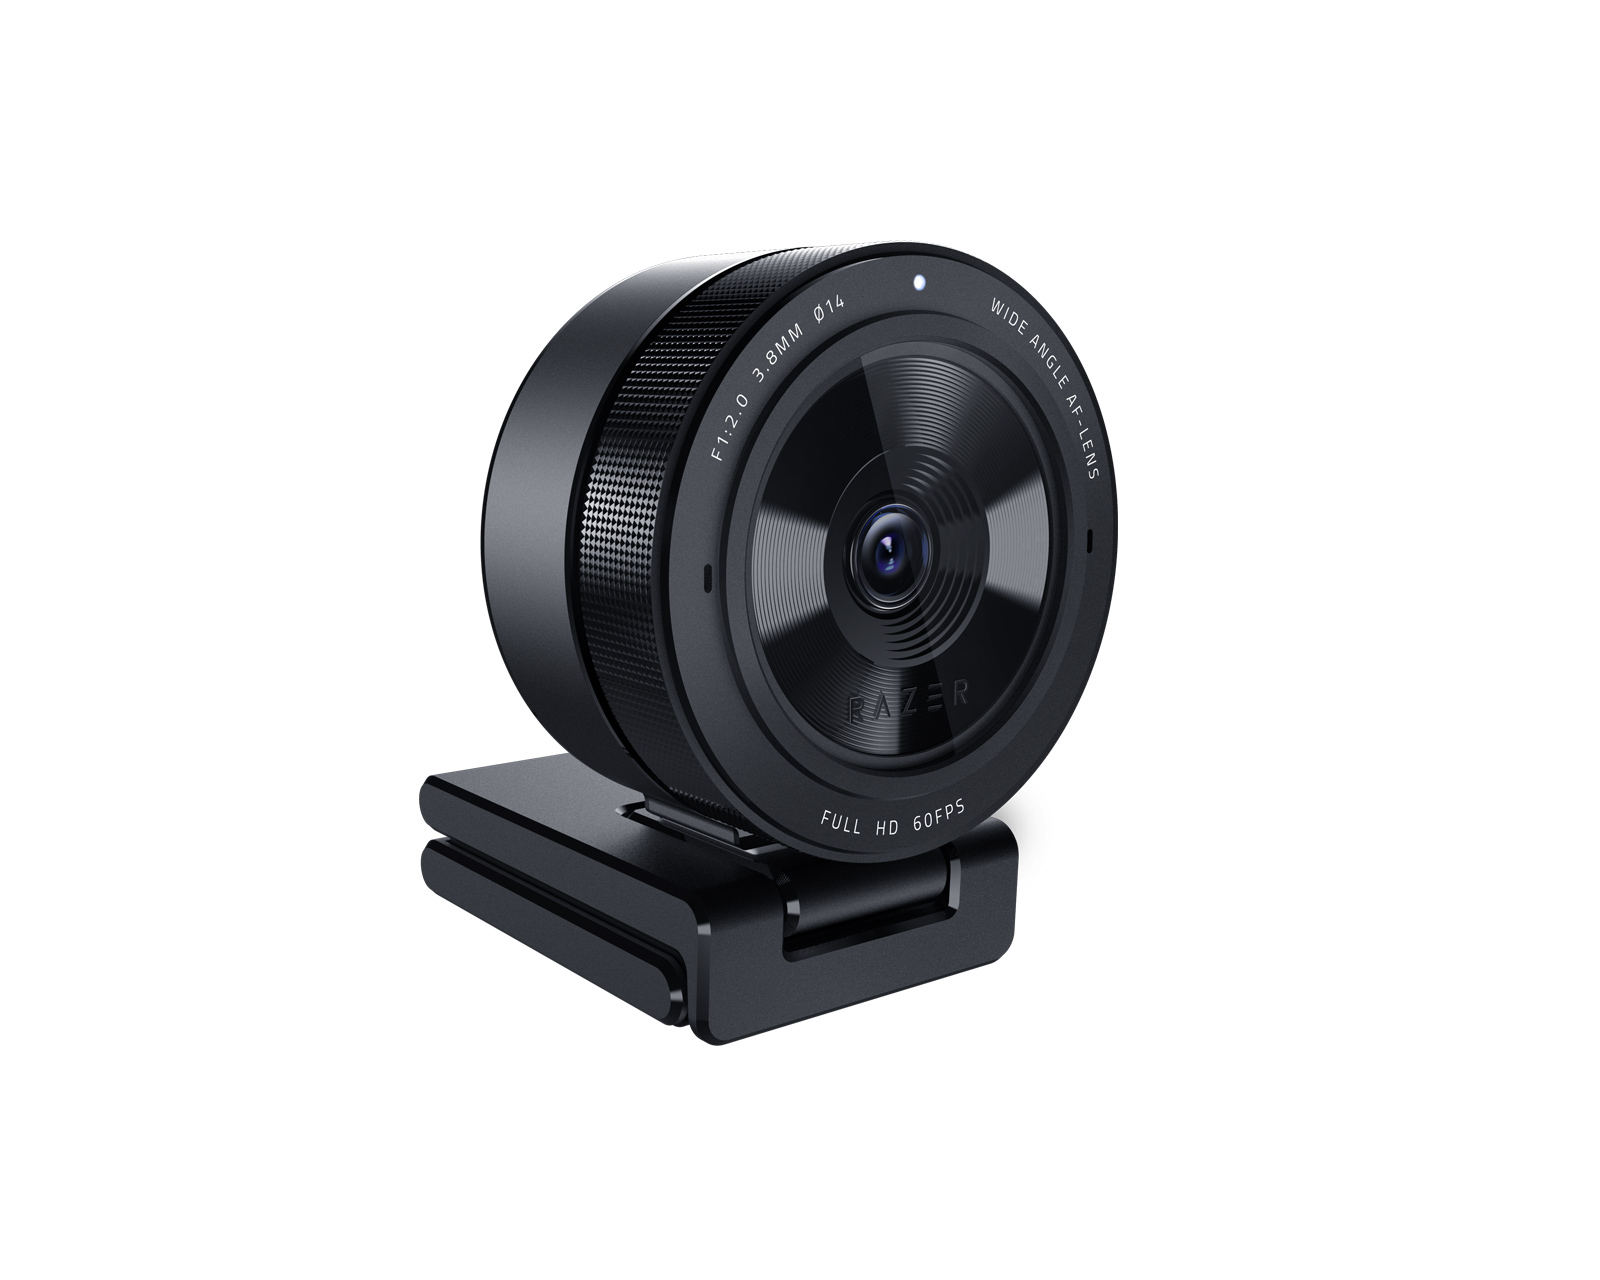  Razer Kiyo Pro Full HD 1080p 60FP Webcam + Seiren V2